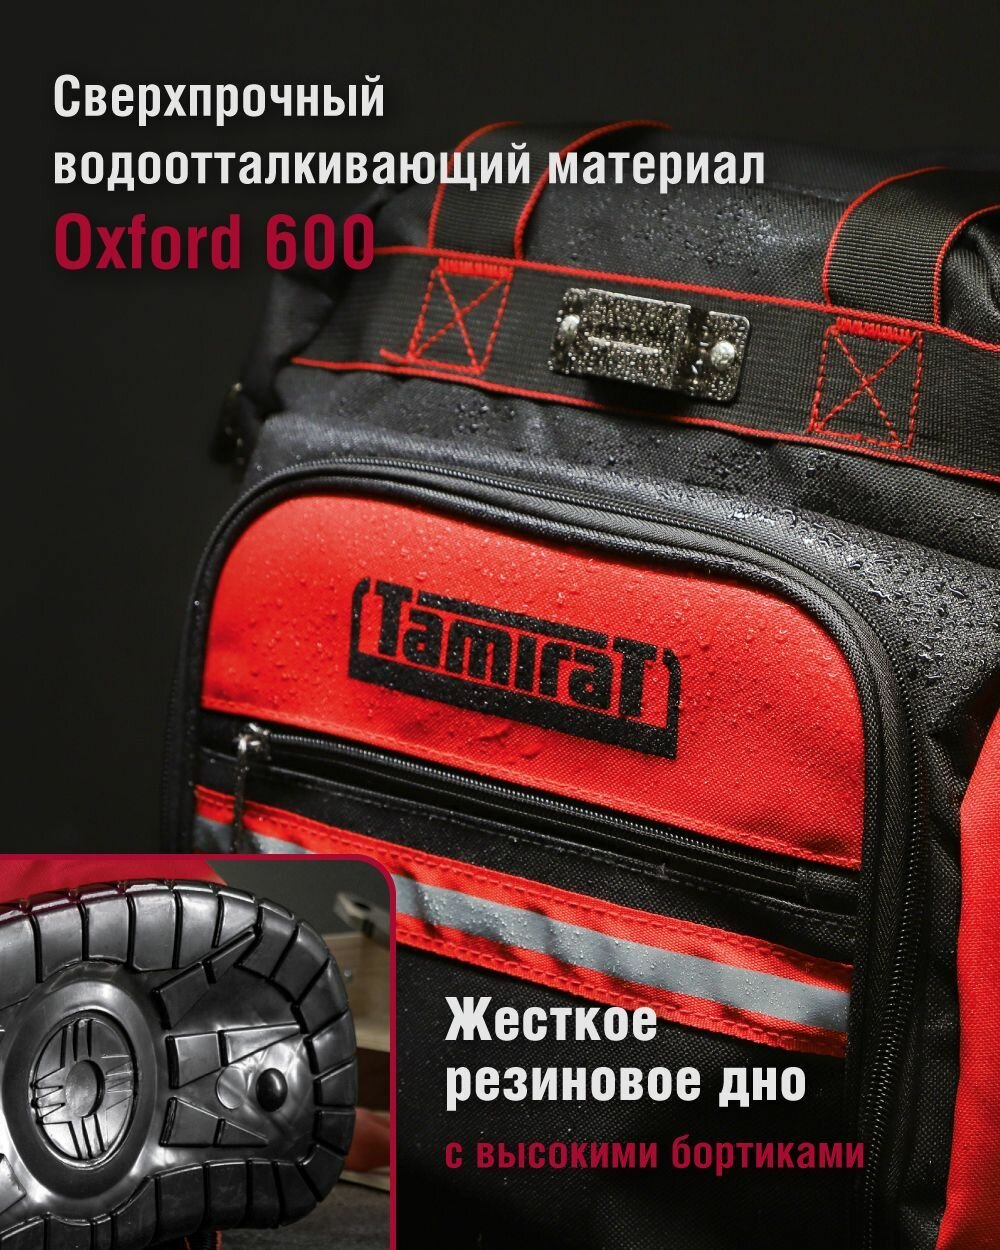 Рюкзак Tamirat 91 250 TTTA-Bag05 (жесткое резиновое дно, 360*180*460 мм)